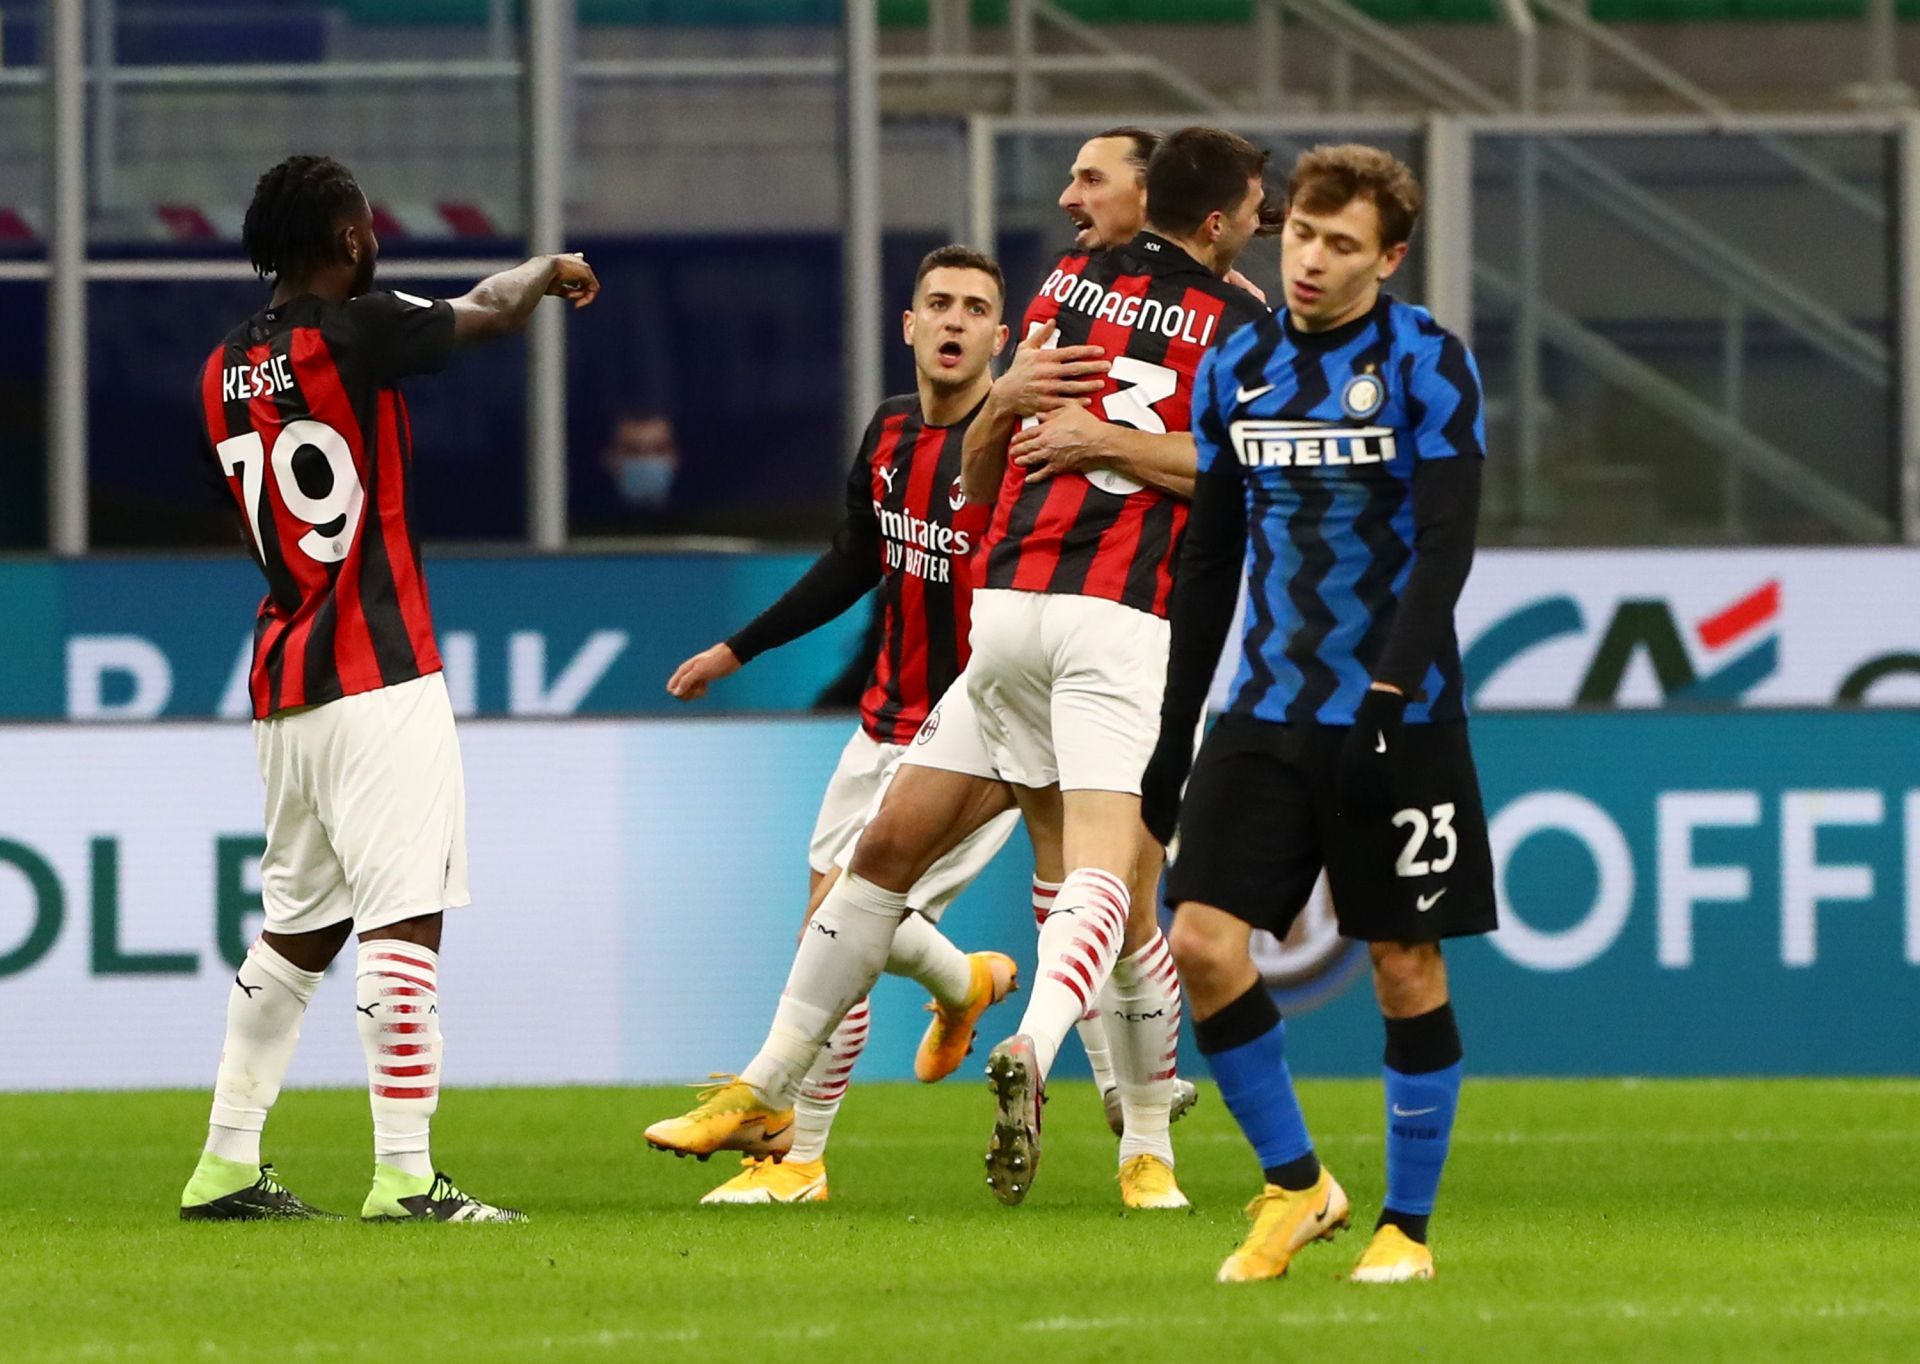 Inter Milan take on AC Milan this weekend